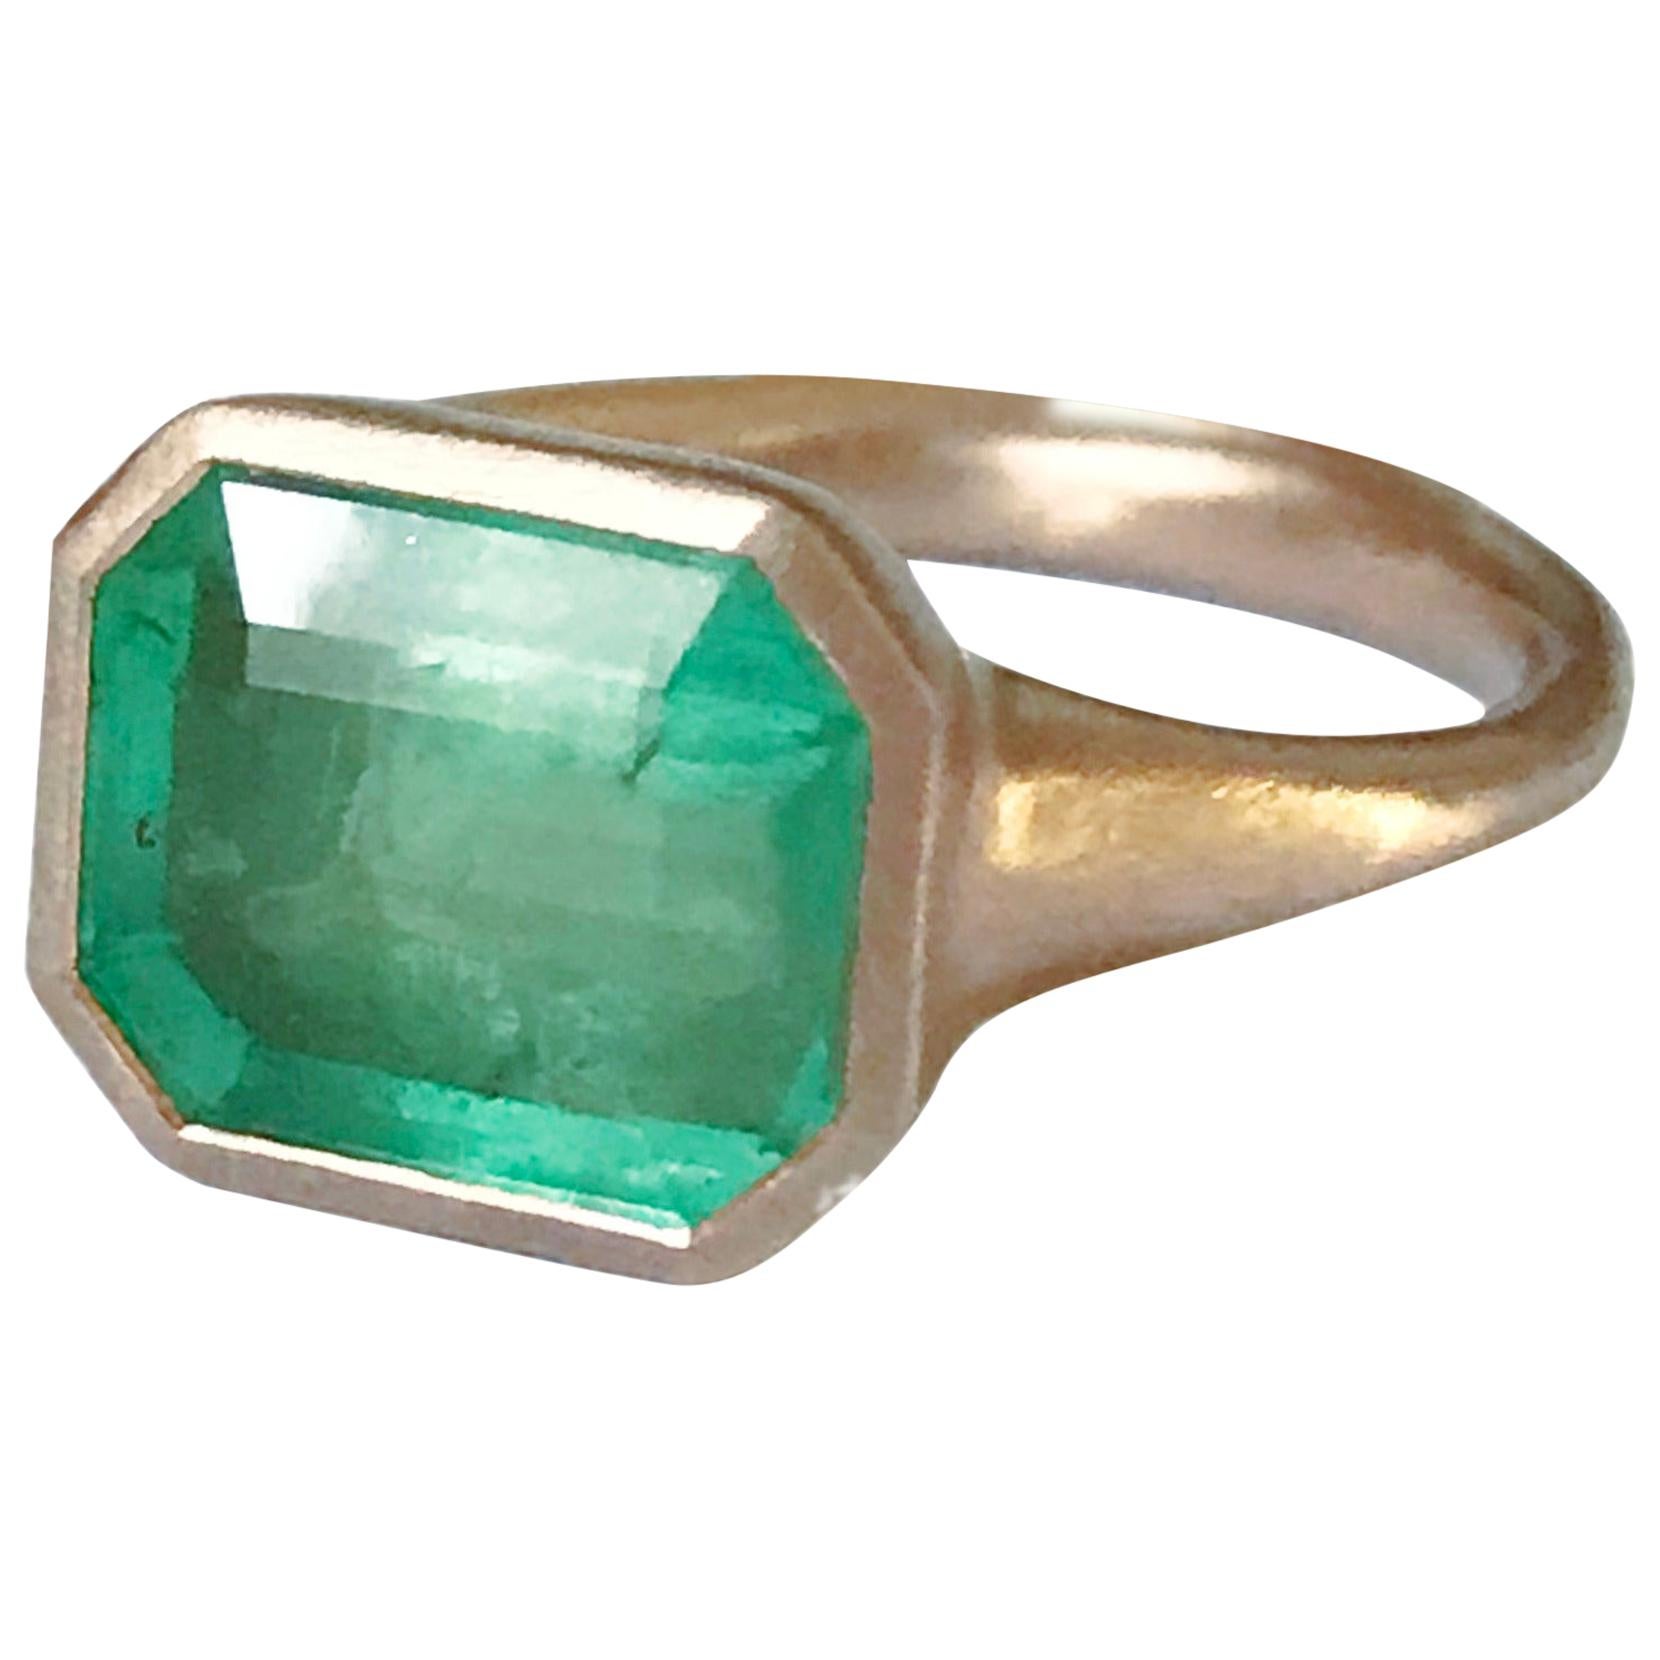 Dalben 4, 10 Carat Emerald Rose Gold Ring